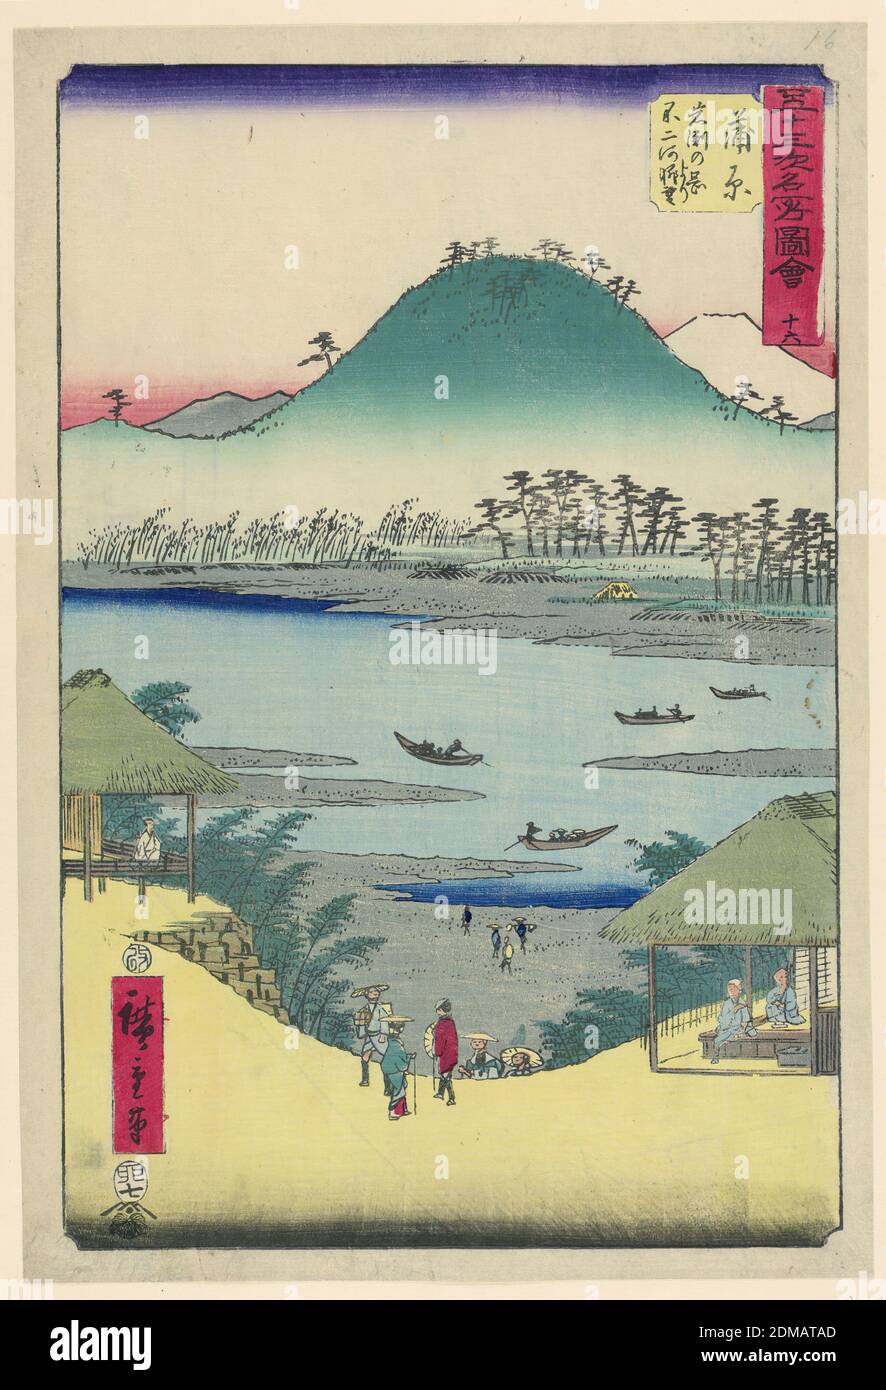 Kanbara: Blick vom Iwabuchi-Hügel von den 53 Stationen Tokaido, Ando Hiroshige, japanisch, 1797–1858, Holzblock-Druck in farbiger Tinte auf Papier, der Bogen des Hügels spielt herrlich mit dem Hang des Vordergrunds. Dazwischen liegt ein Buys River, der Menschen mit Booten transportiert. Direkt im Vordergrund sind drei Personen dabei, den steilen Hügel hinabzusteigen, während andere Leute den Hügel hinauf klettern. Zwei kleine Geschäfte befinden sich auf beiden Seiten des Drucks. Drei Leute sitzen unter dem Pavillon und genießen die Landschaft., Japan, 1797-1858, Landschaften, Drucken Stockfoto